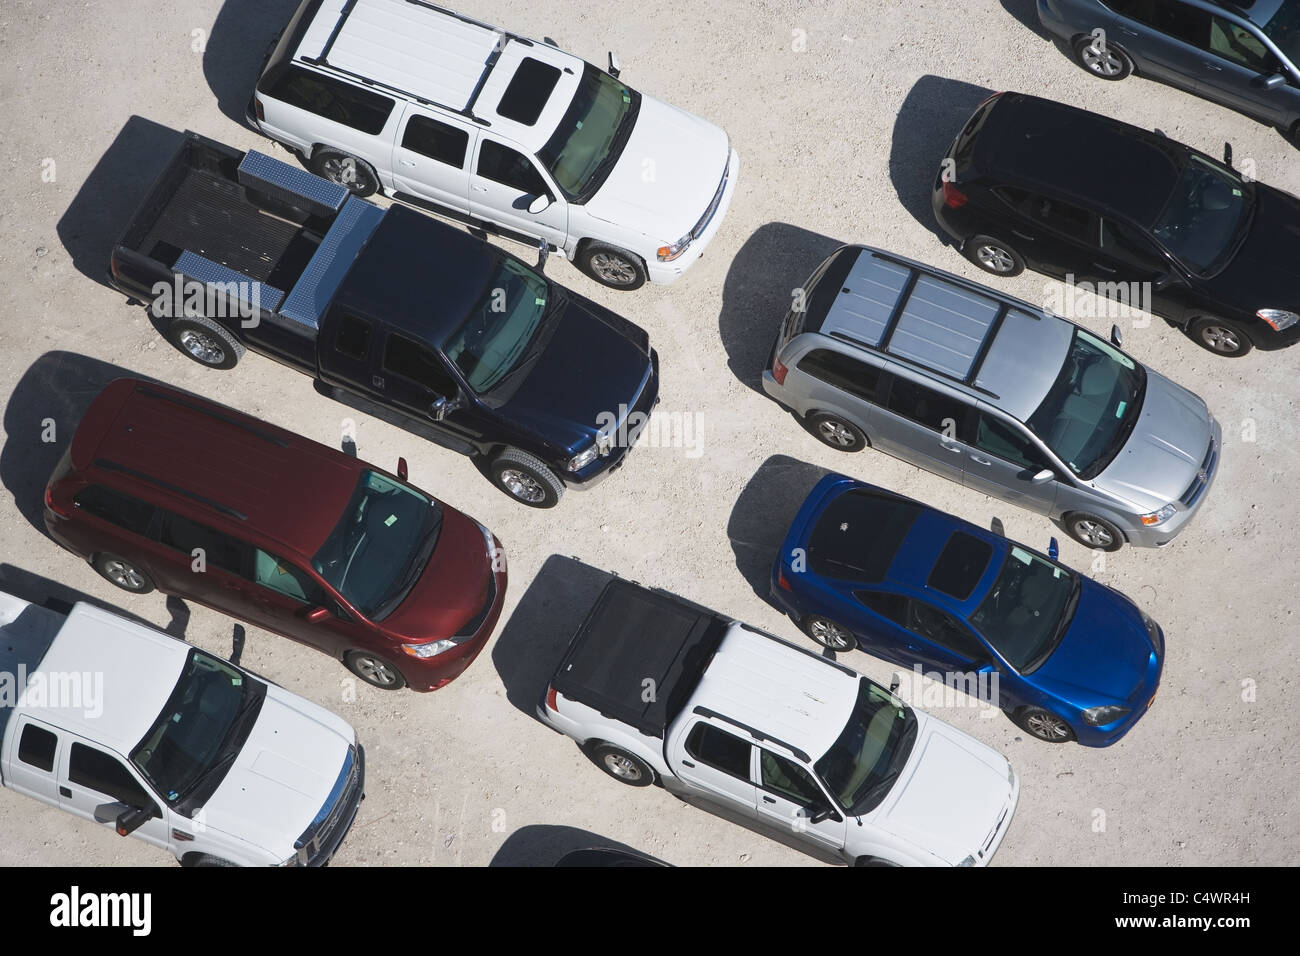 Estados Unidos, Florida, Miami vista aérea de aparcamiento Foto de stock